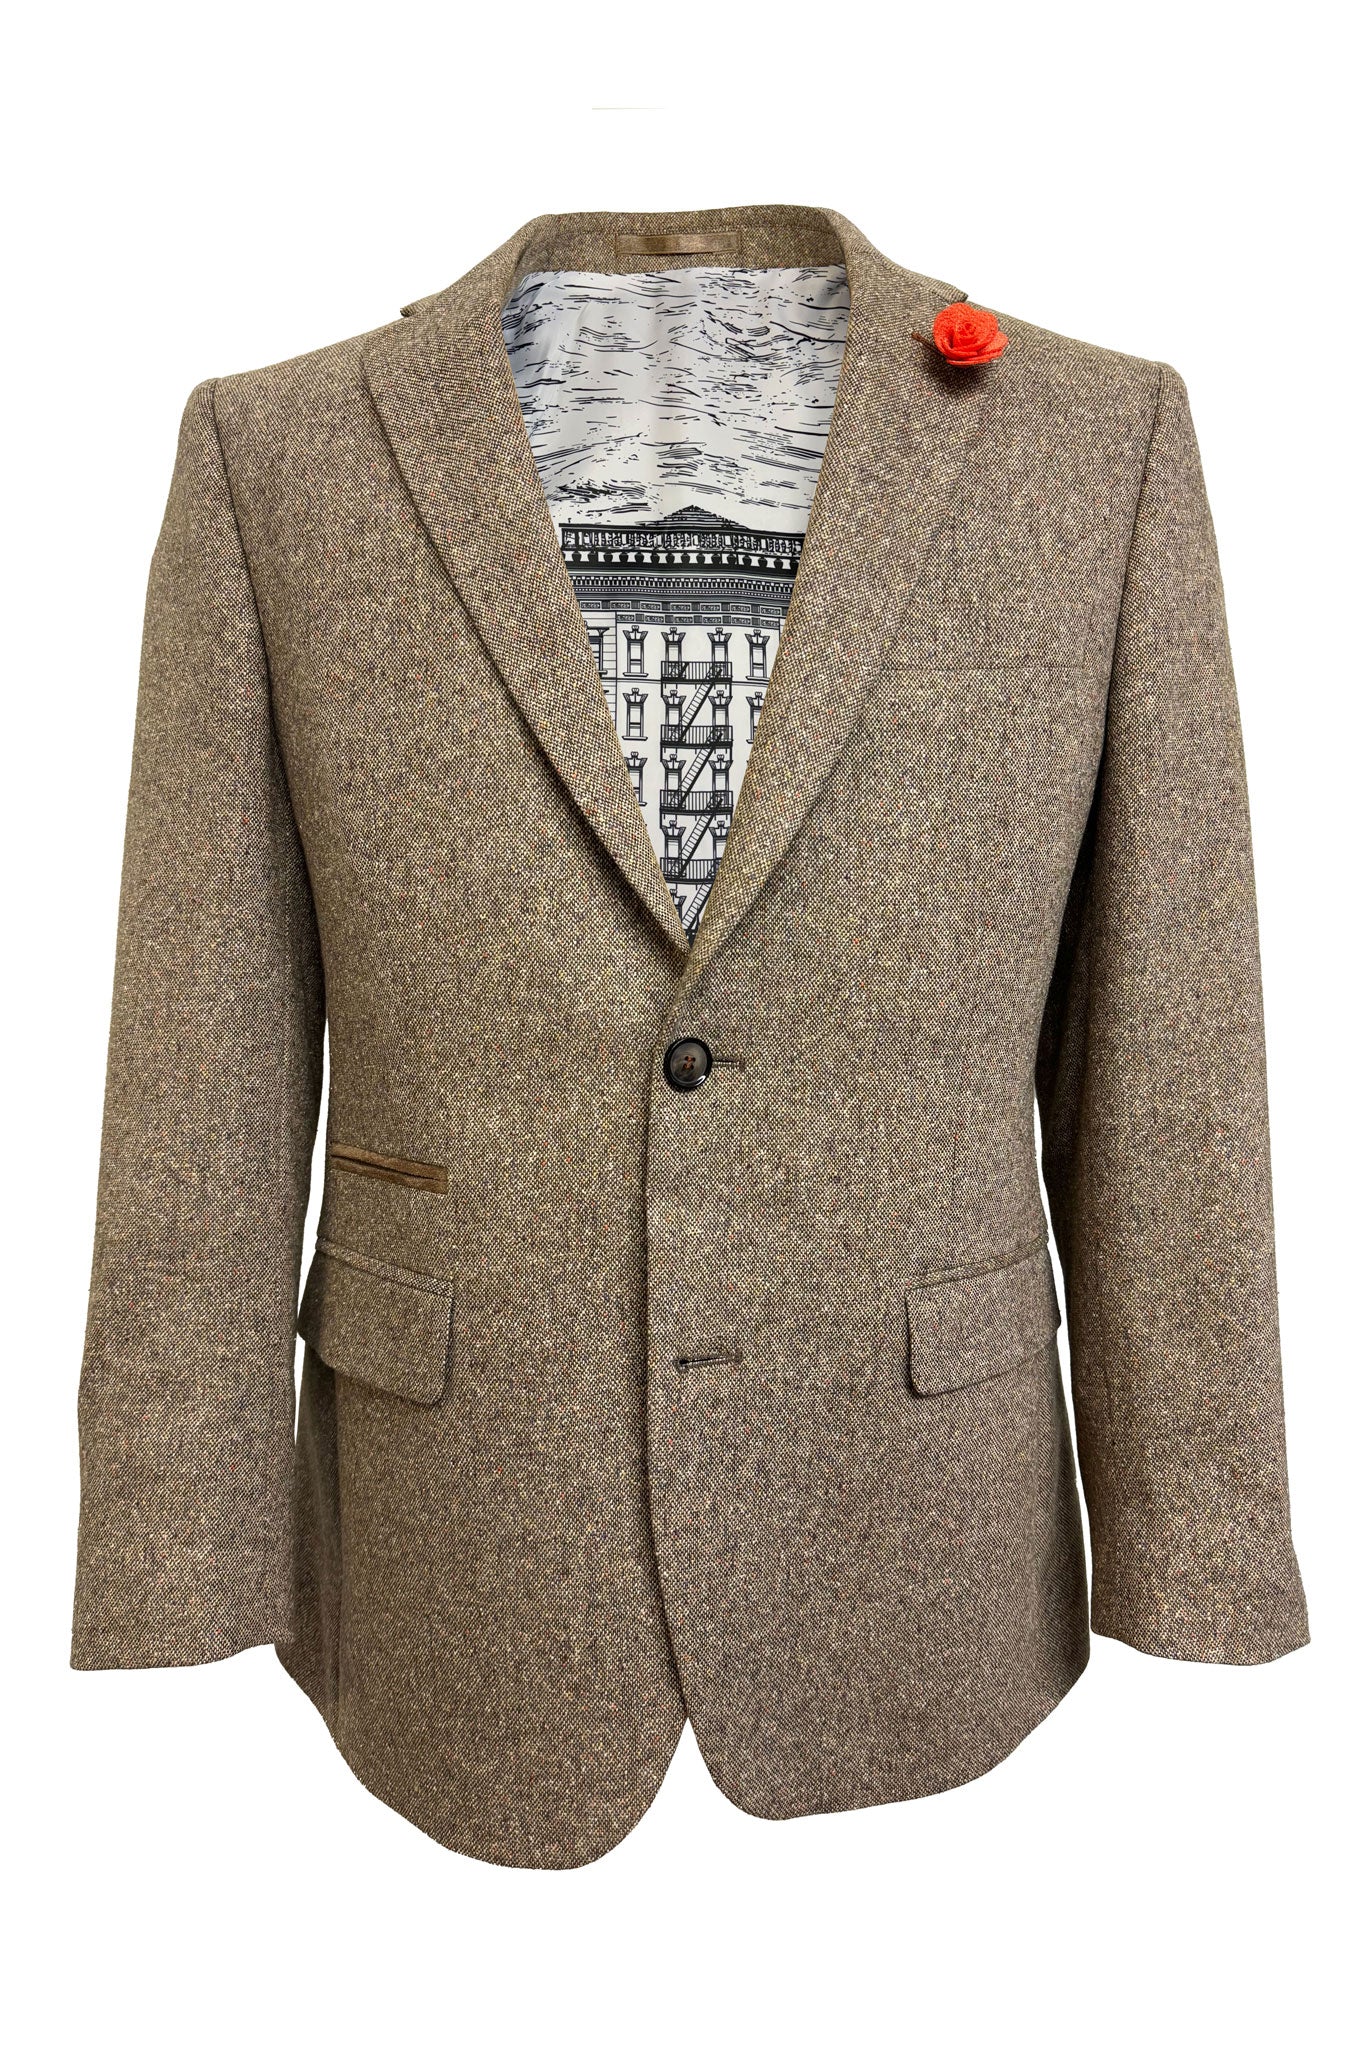 Men's Beige Tweed Wool Cotton Jacket